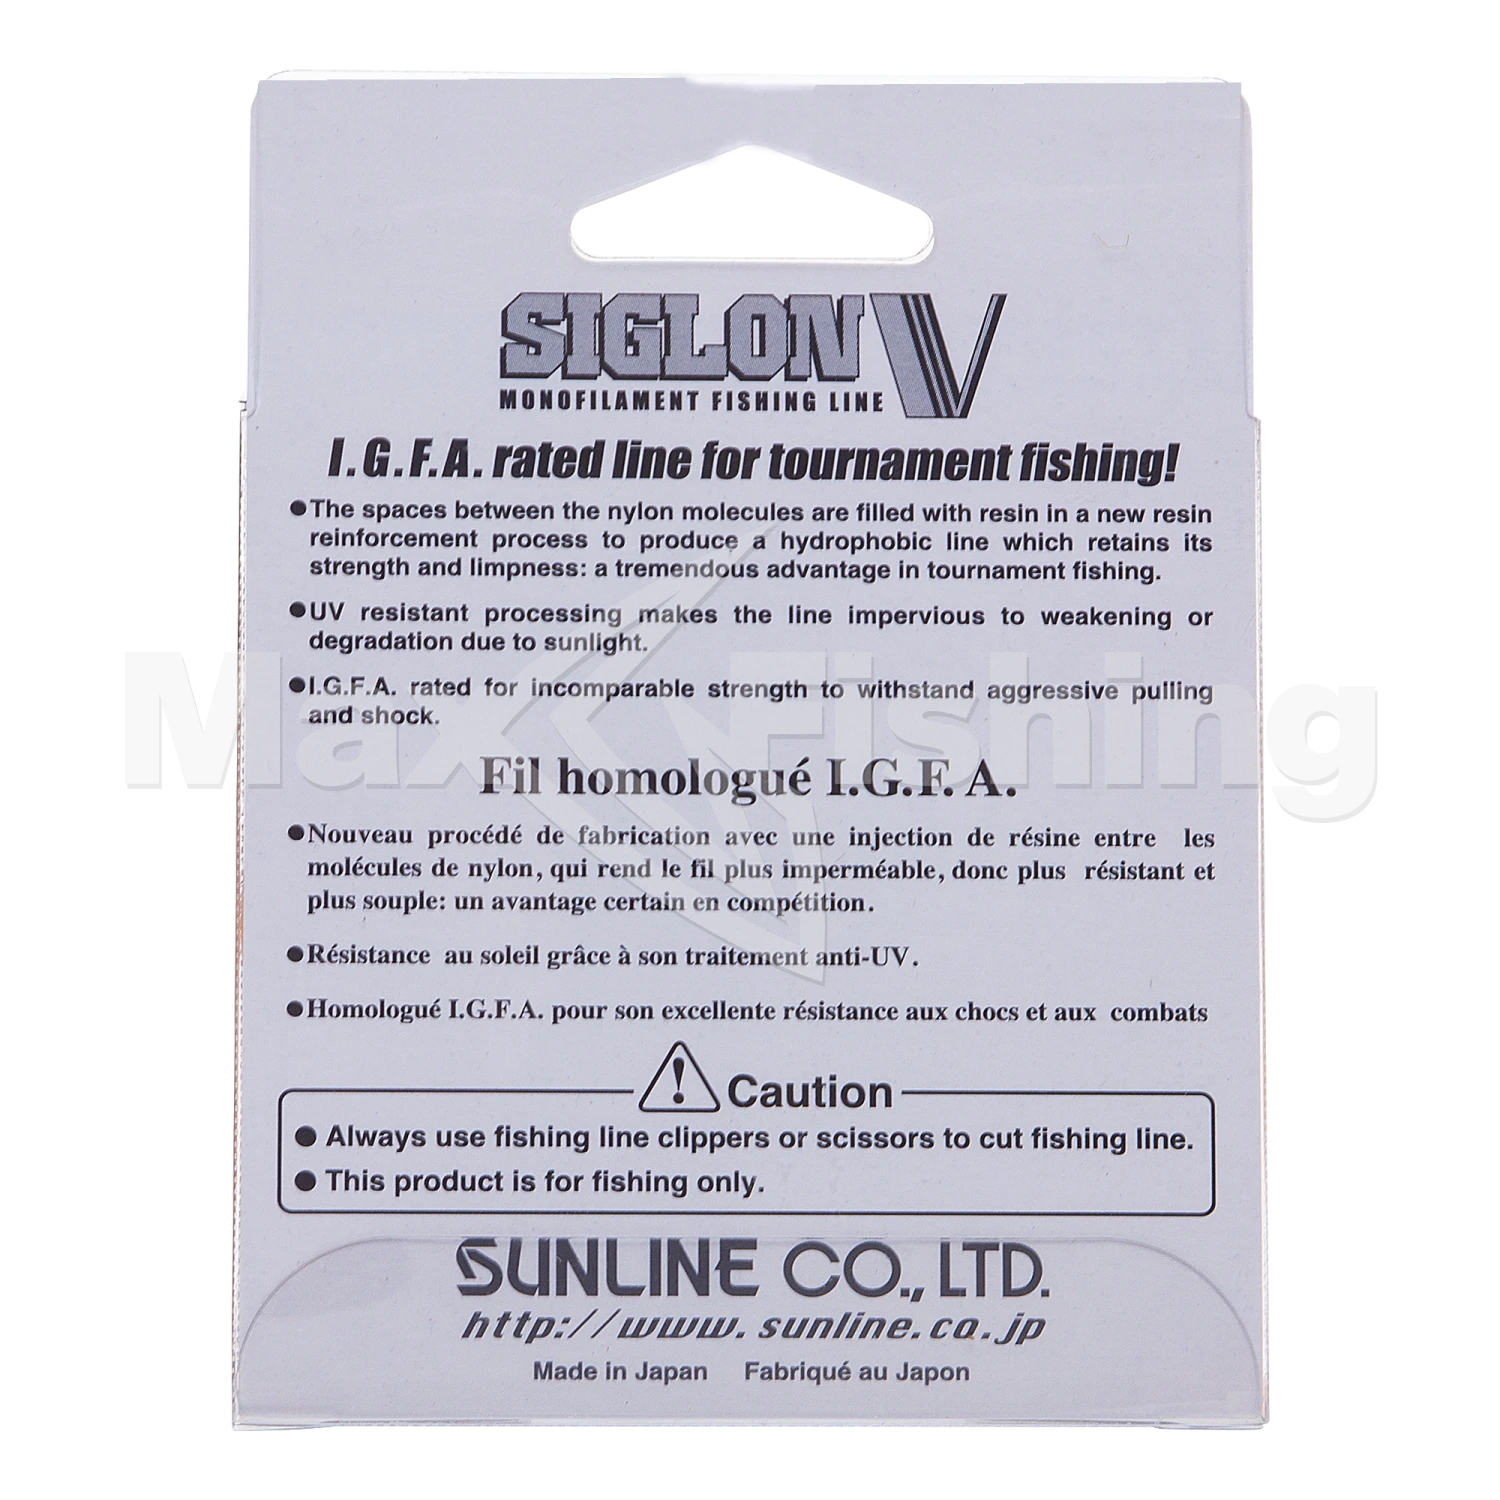 Леска монофильная Sunline Siglon V #7,0 0,435мм 100м (clear)